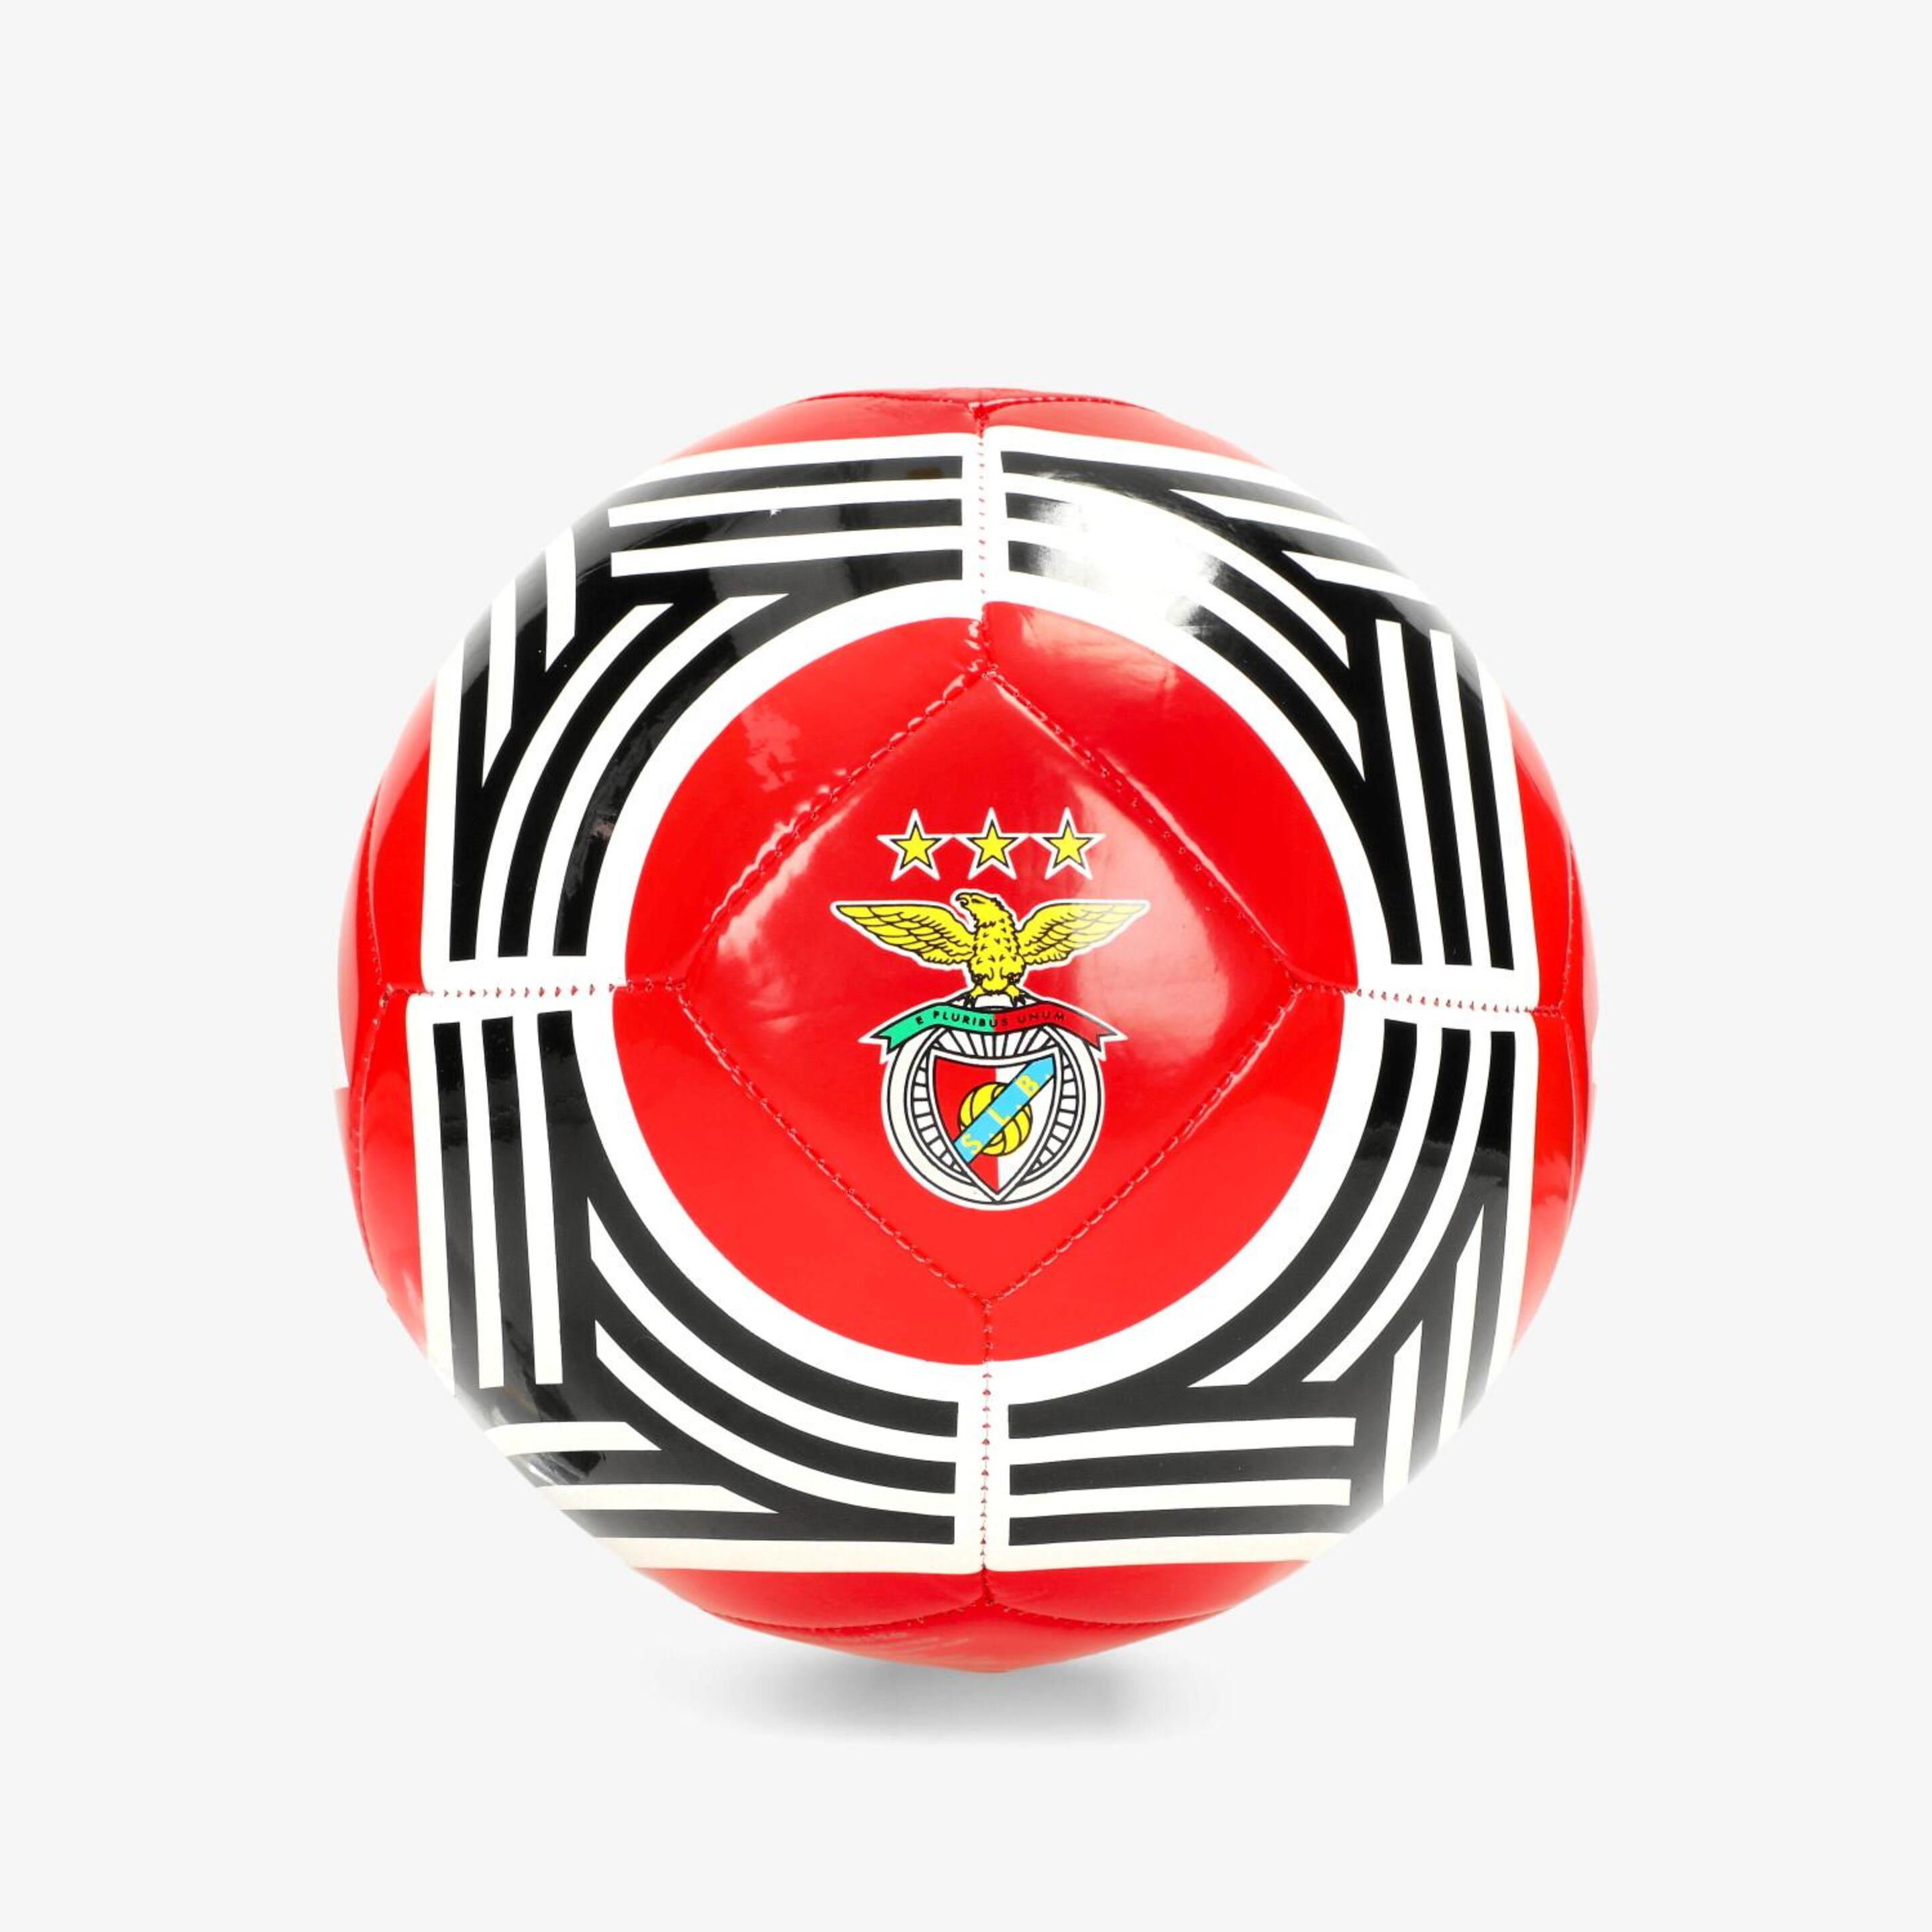 Minibalón Benfica Lisboa 23/24